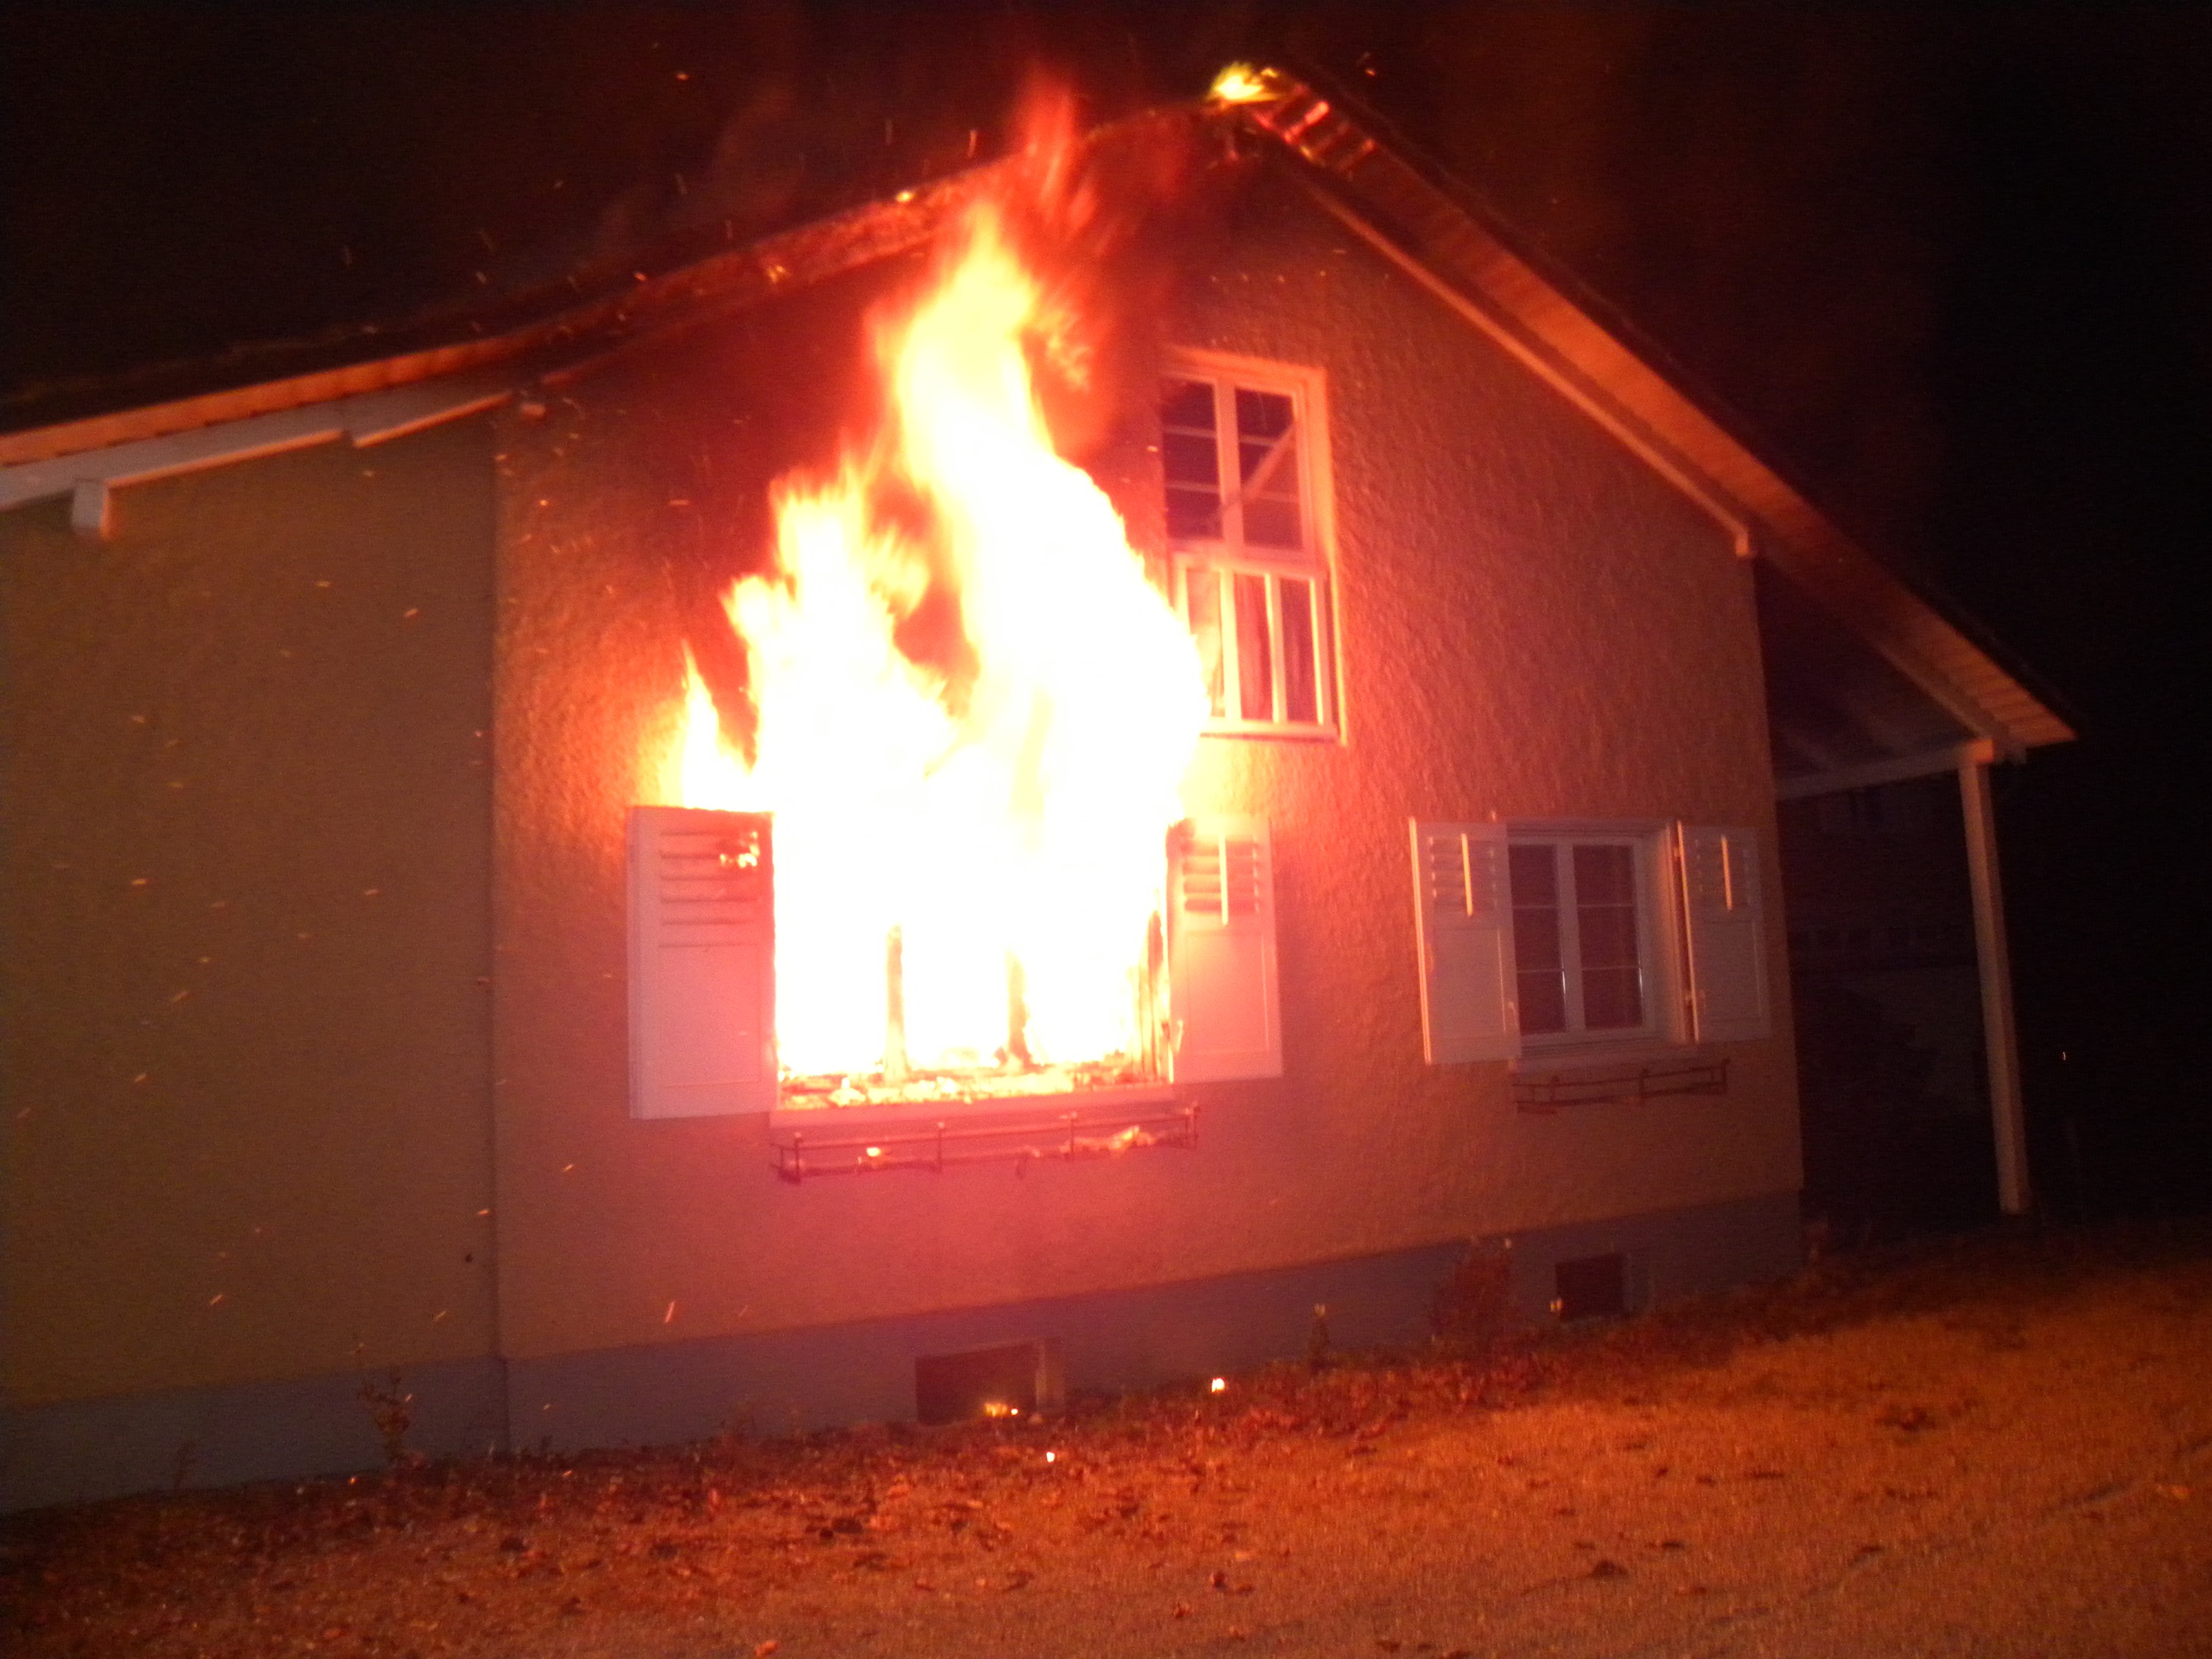 Haus in Brand, Flammen aus Fenster sichtbar